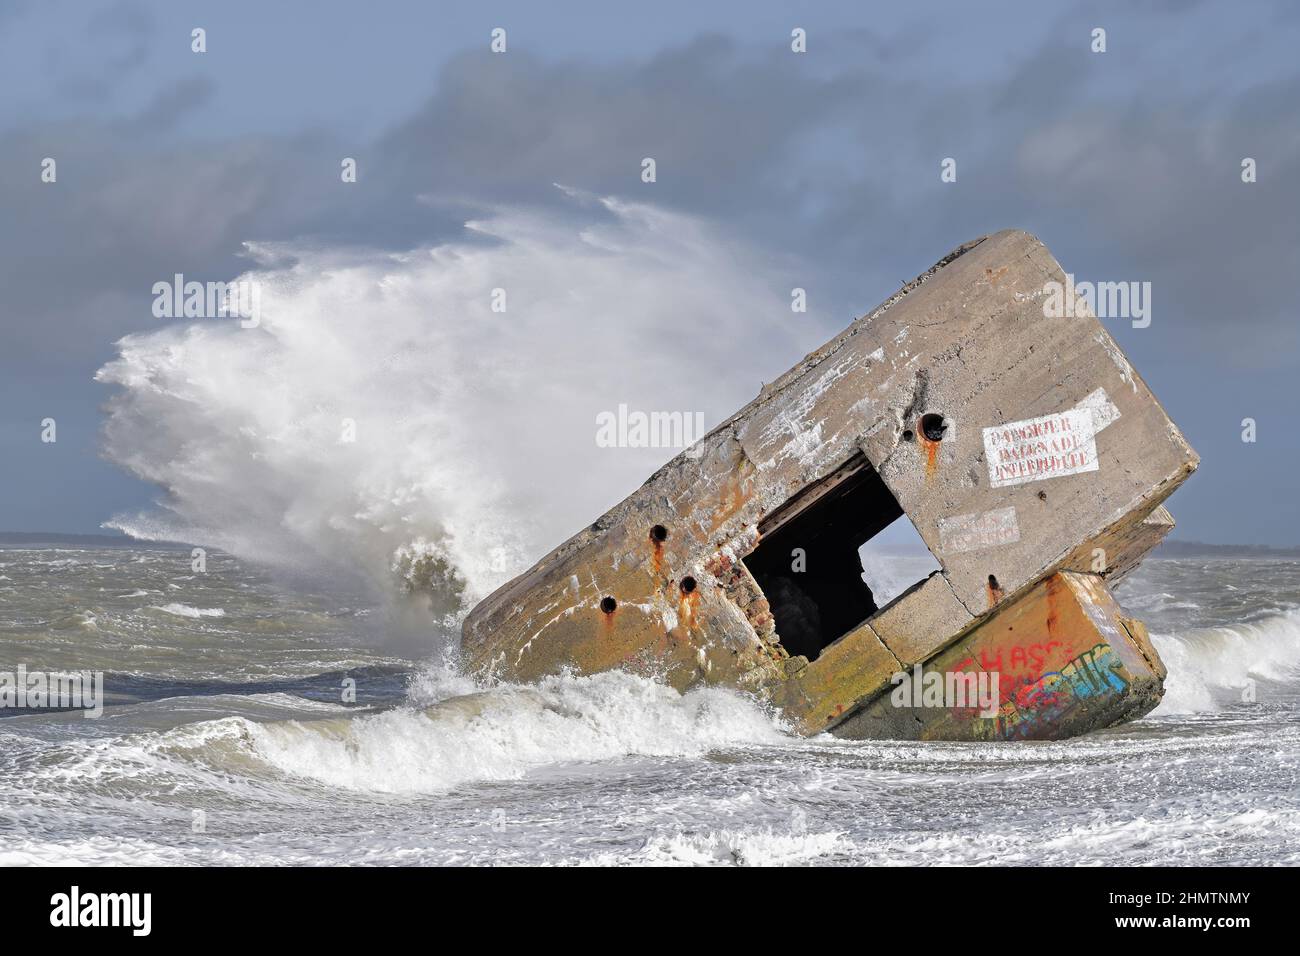 Le blockhaus du Hourdel dans la tempête, vagues géantes sur le monstre de béton. Stock Photo